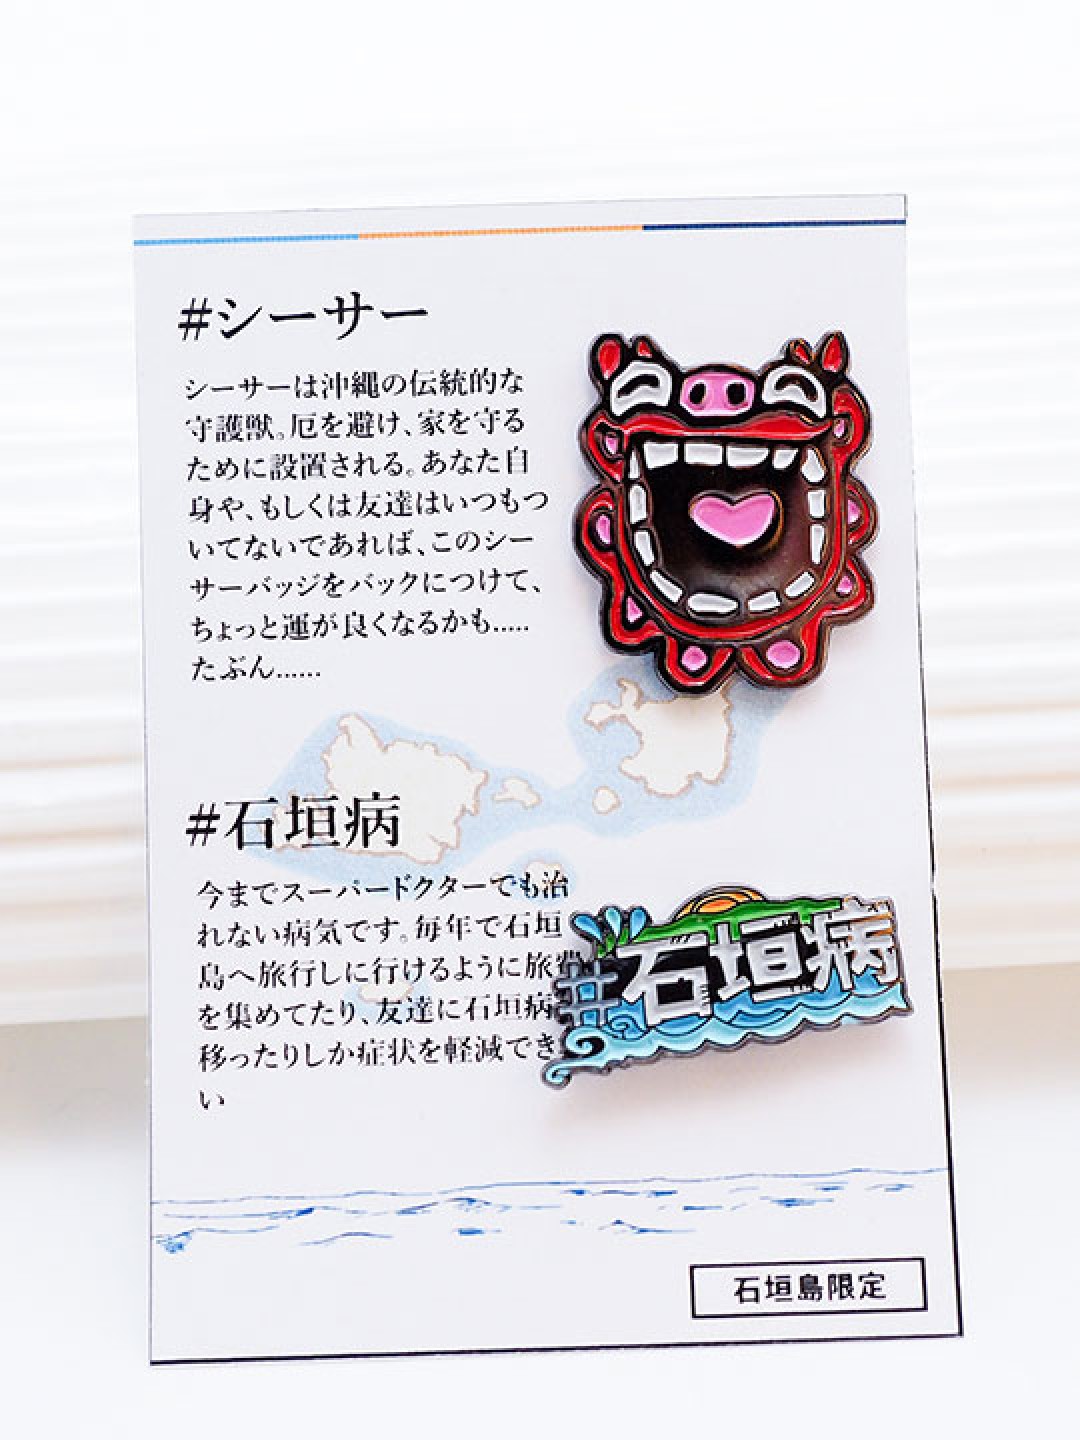 Ishigaki Island badge designed by go2ishigaki, exclusive to Yaeyama Islands.